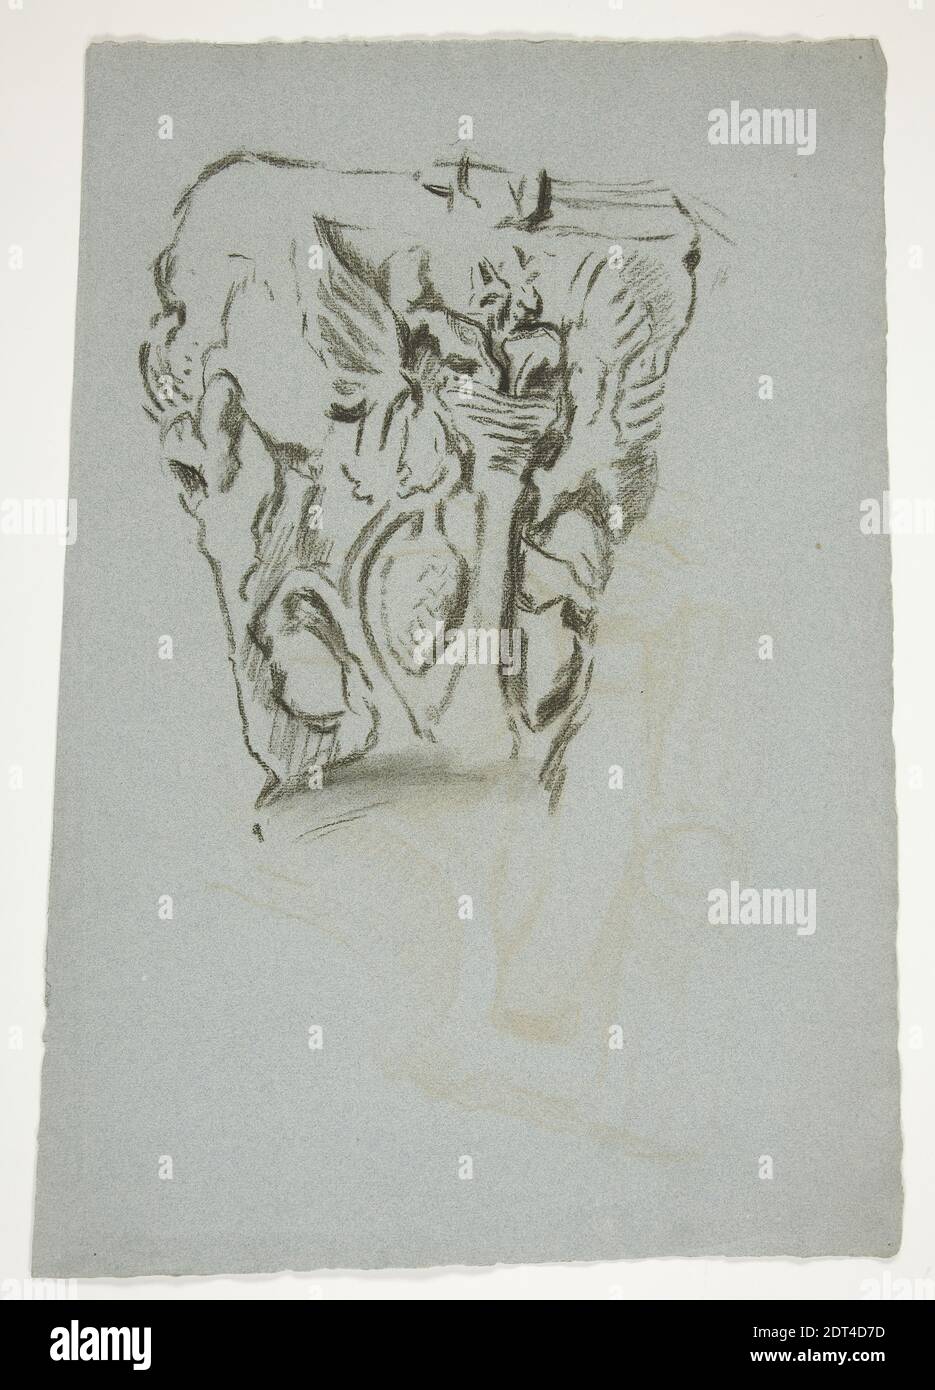 Artiste: Edwin Austin Abbey, américain, 1852–1911, M.A., 1897, esquisse d'une capitale, charbon, bleu, 47.4 × 33.5 cm (18 11/16 × 13 3/16 po.), fabriqué aux États-Unis, américain, 19e siècle, œuvres sur papier - dessins et aquarelles Banque D'Images